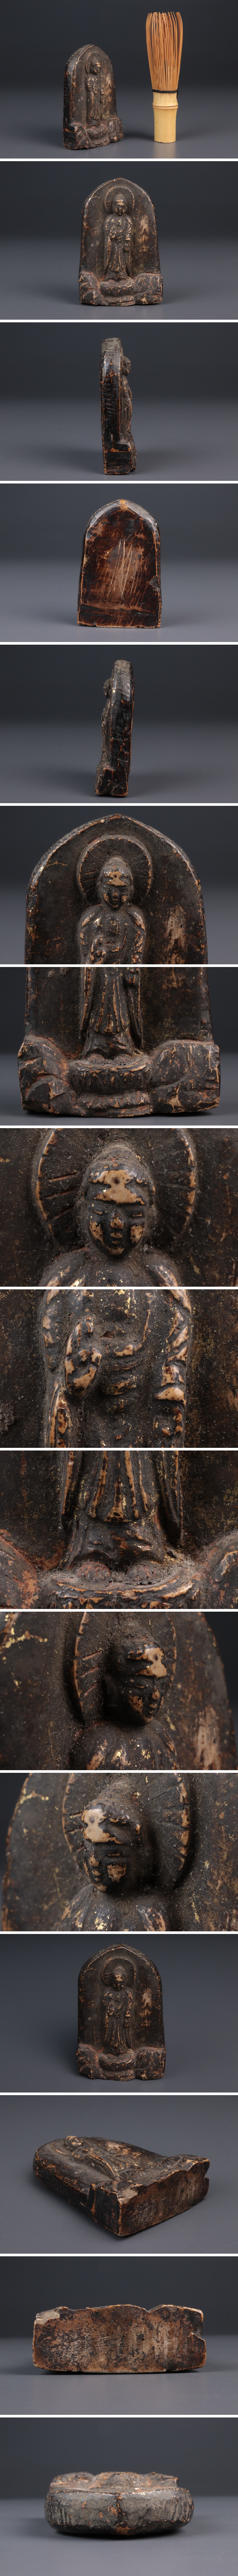 大阪公式仏教美術 鍍金 石仏 置物 仏像 仏具 宗教美術 高さ:約8.7cm 骨董品 美術品 5441efy 仏像